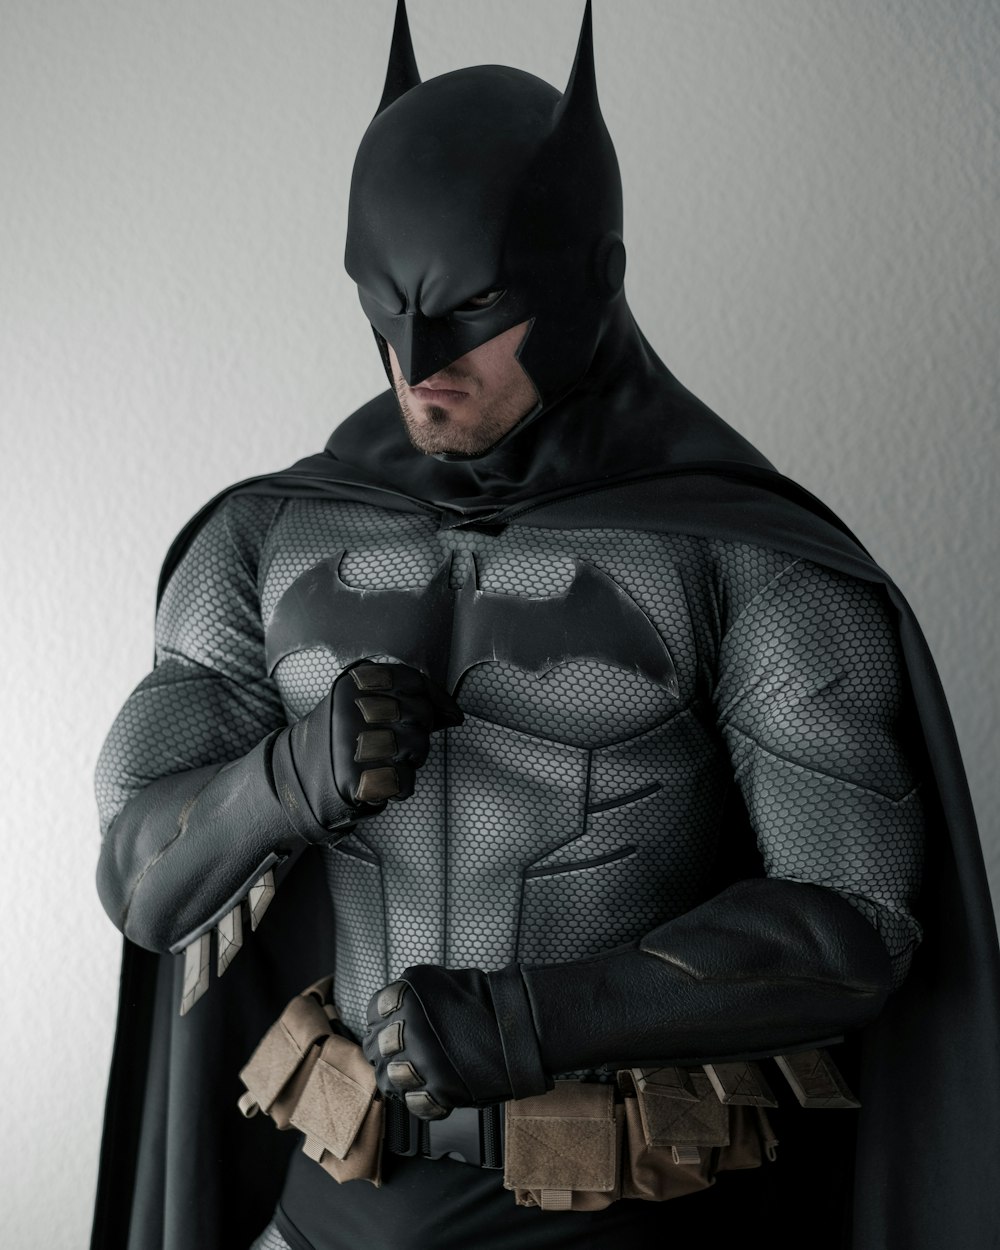 Imágenes de The Batman | Descarga imágenes gratuitas en Unsplash